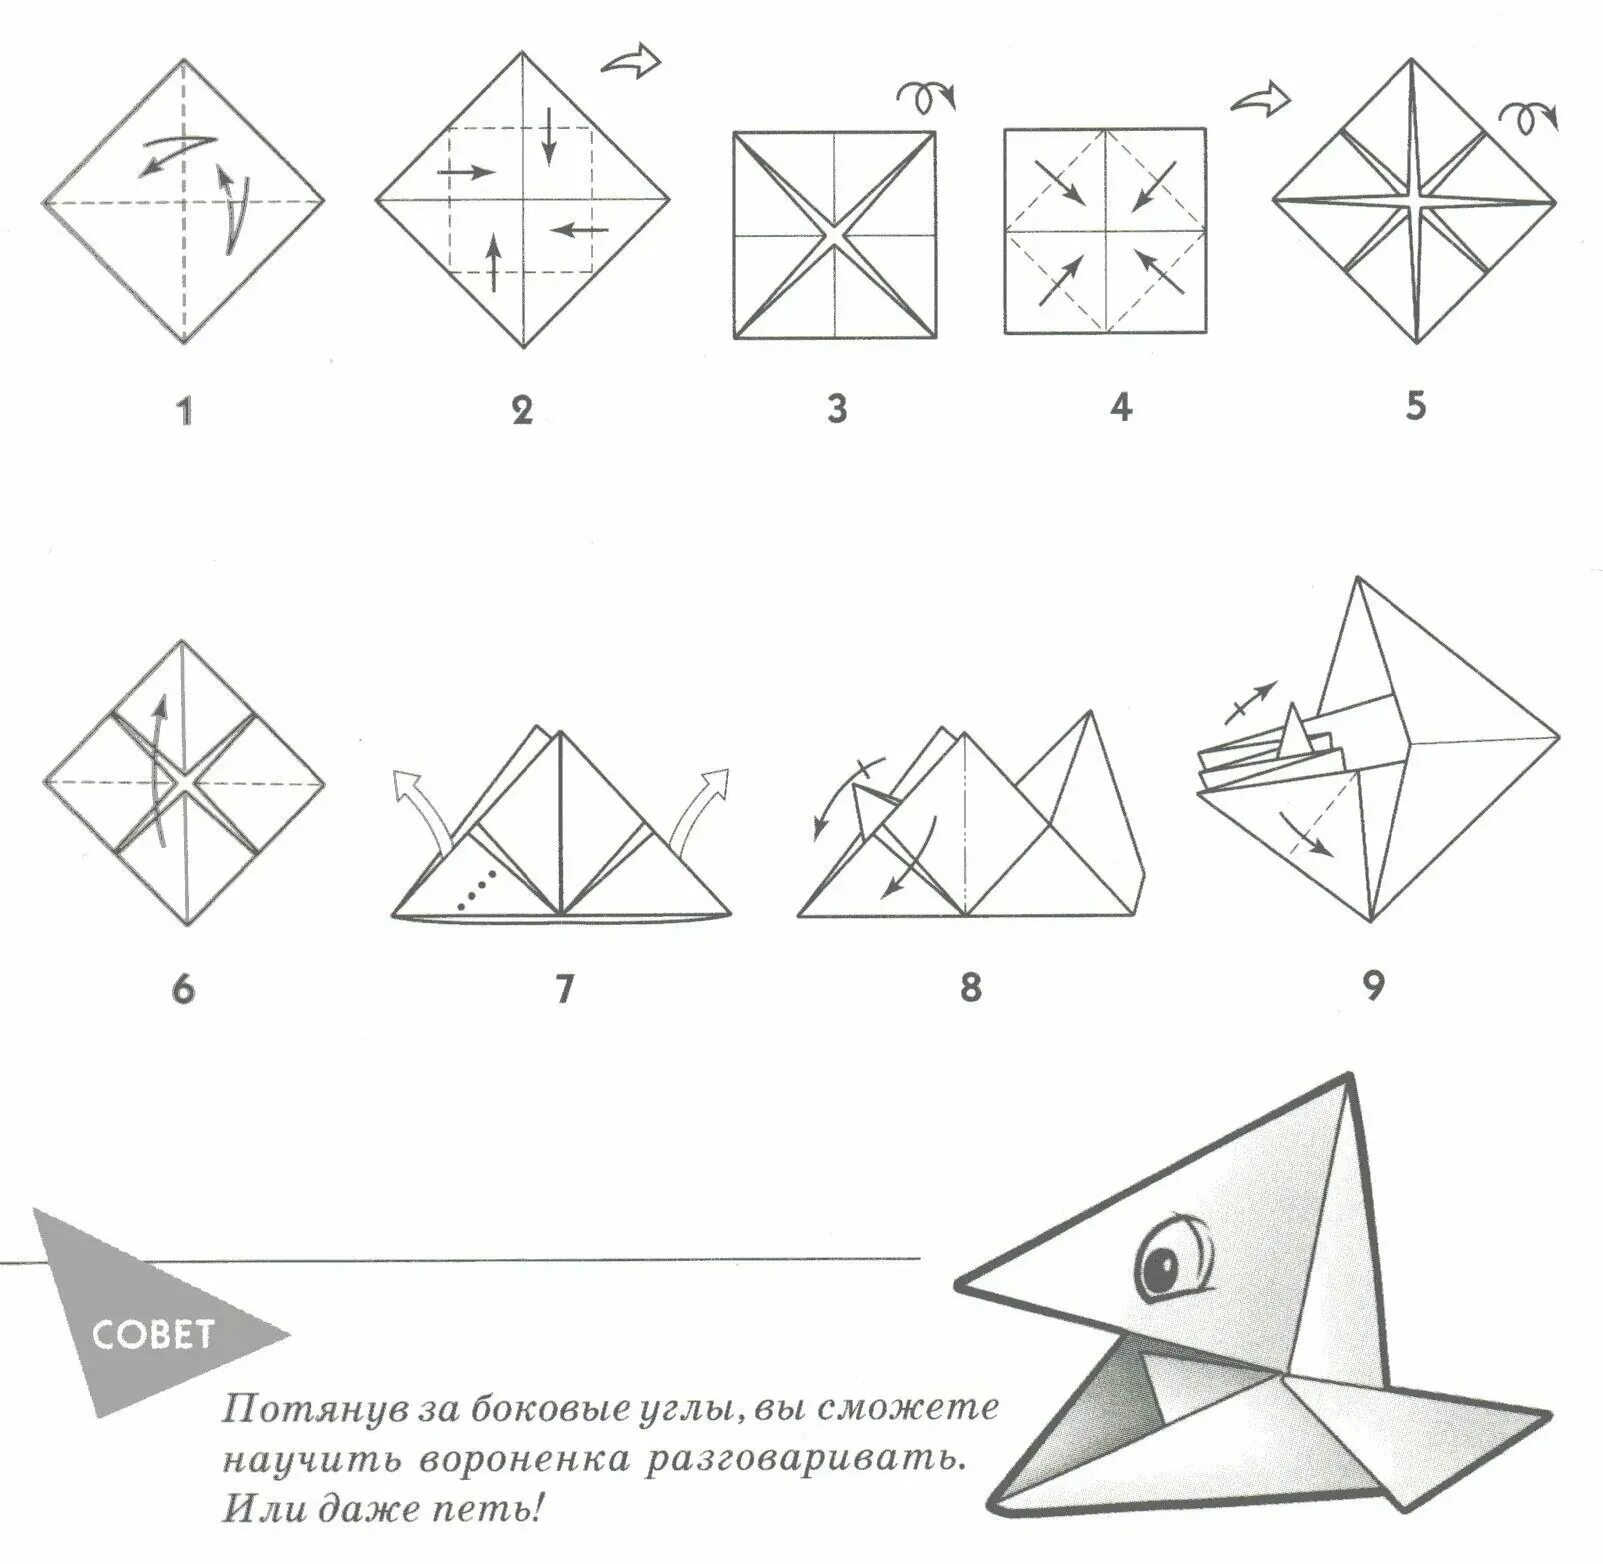 Как собирать оригами. Поделка оригами из бумаги для начинающих пошагово. Оригами из бумаги для начинающих схемы пошагово. Поделки из бумаги схема складывания. Поделки оригами из бумаги своими руками для начинающих пошагово.